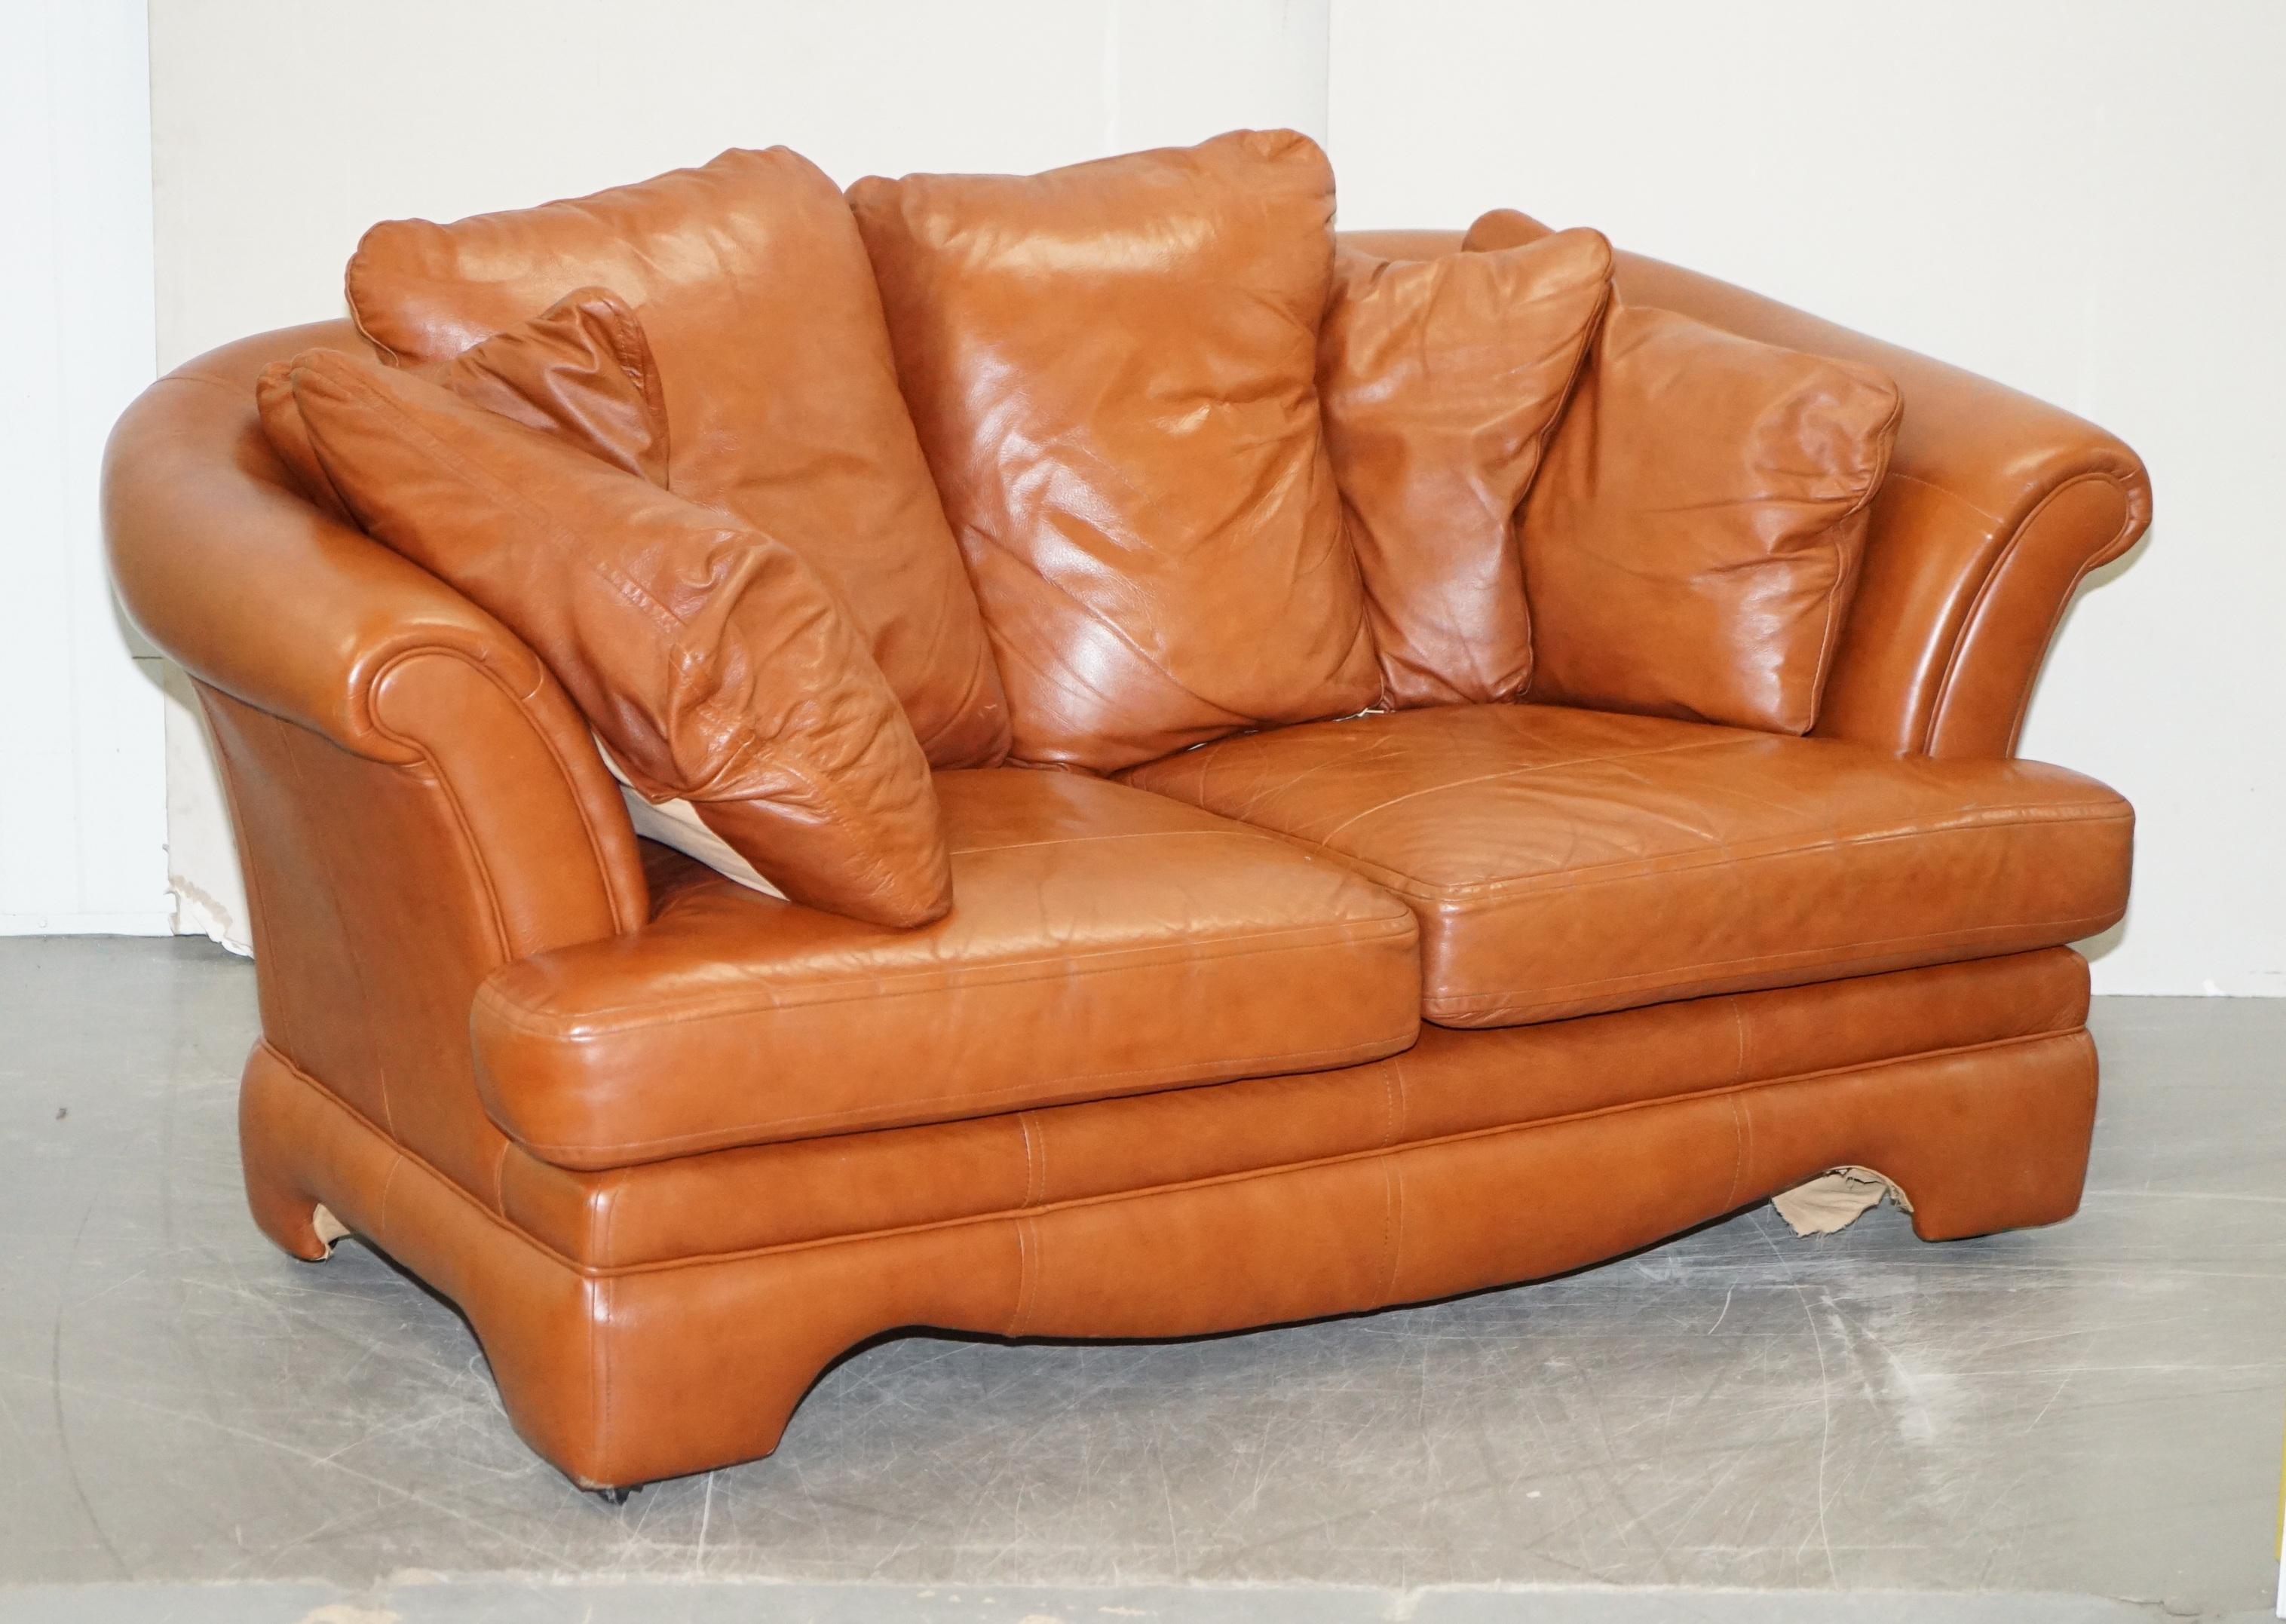 Wir freuen uns, dieses sehr schöne Sofa und Sessel in braunem Leder mit abnehmbaren Kissen zum Verkauf anbieten zu können 

Eine schöne, dekorative und bequeme Sitzgruppe. Die Rückenkissen sind solide kombiniert und lassen sich mit einem